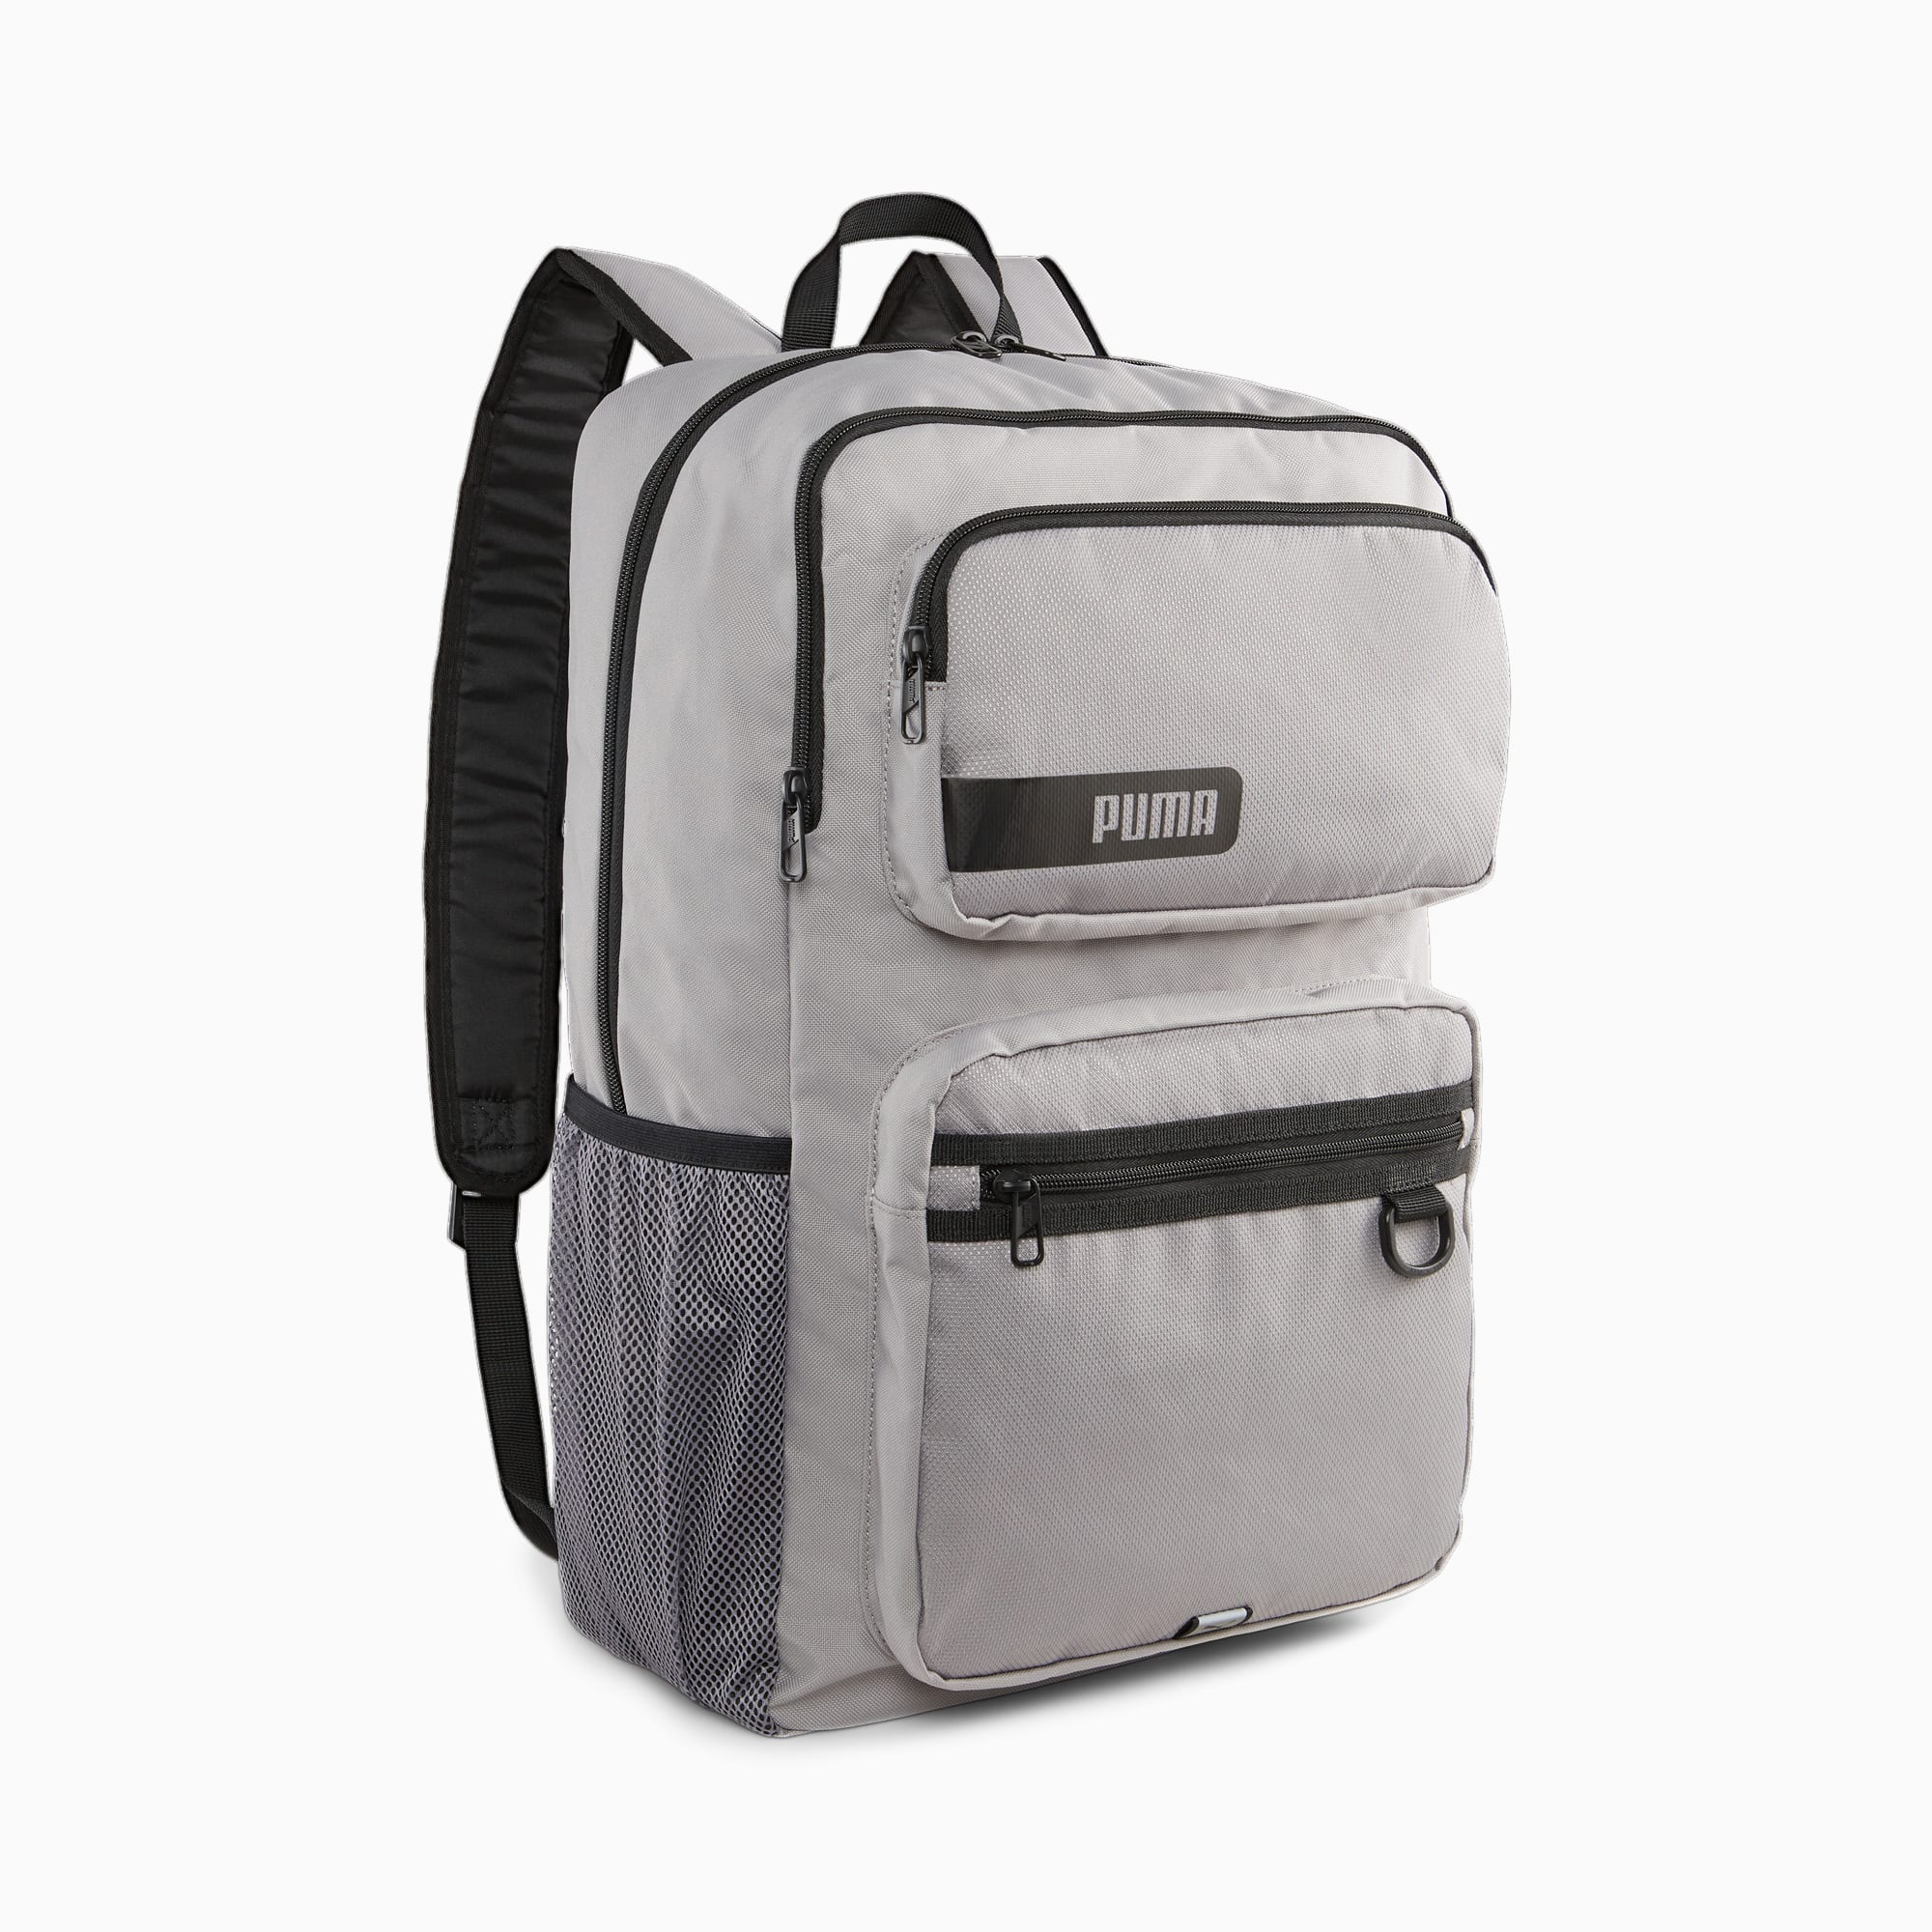 Deck Backpack | Concrete Gray | PUMA SHOP ALL PUMA | PUMA